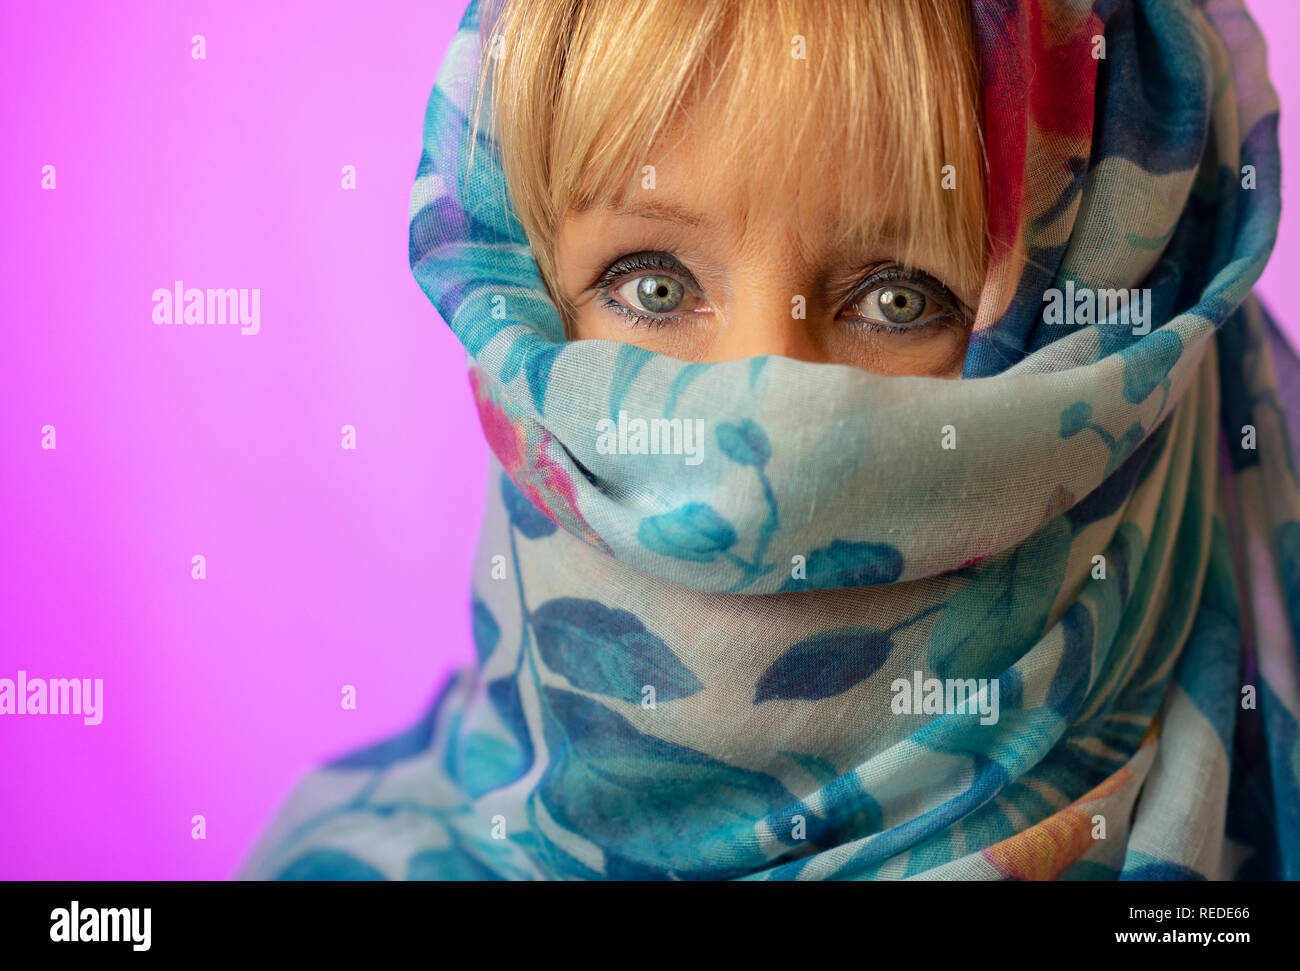 Weiße Frau mit blonden Haaren und blauen Augen trägt einen blauen Kopftuch  als modisches Accessoire mit nur Augen und Fringe zeigt vor einem rosa  Hintergrund Stockfotografie - Alamy